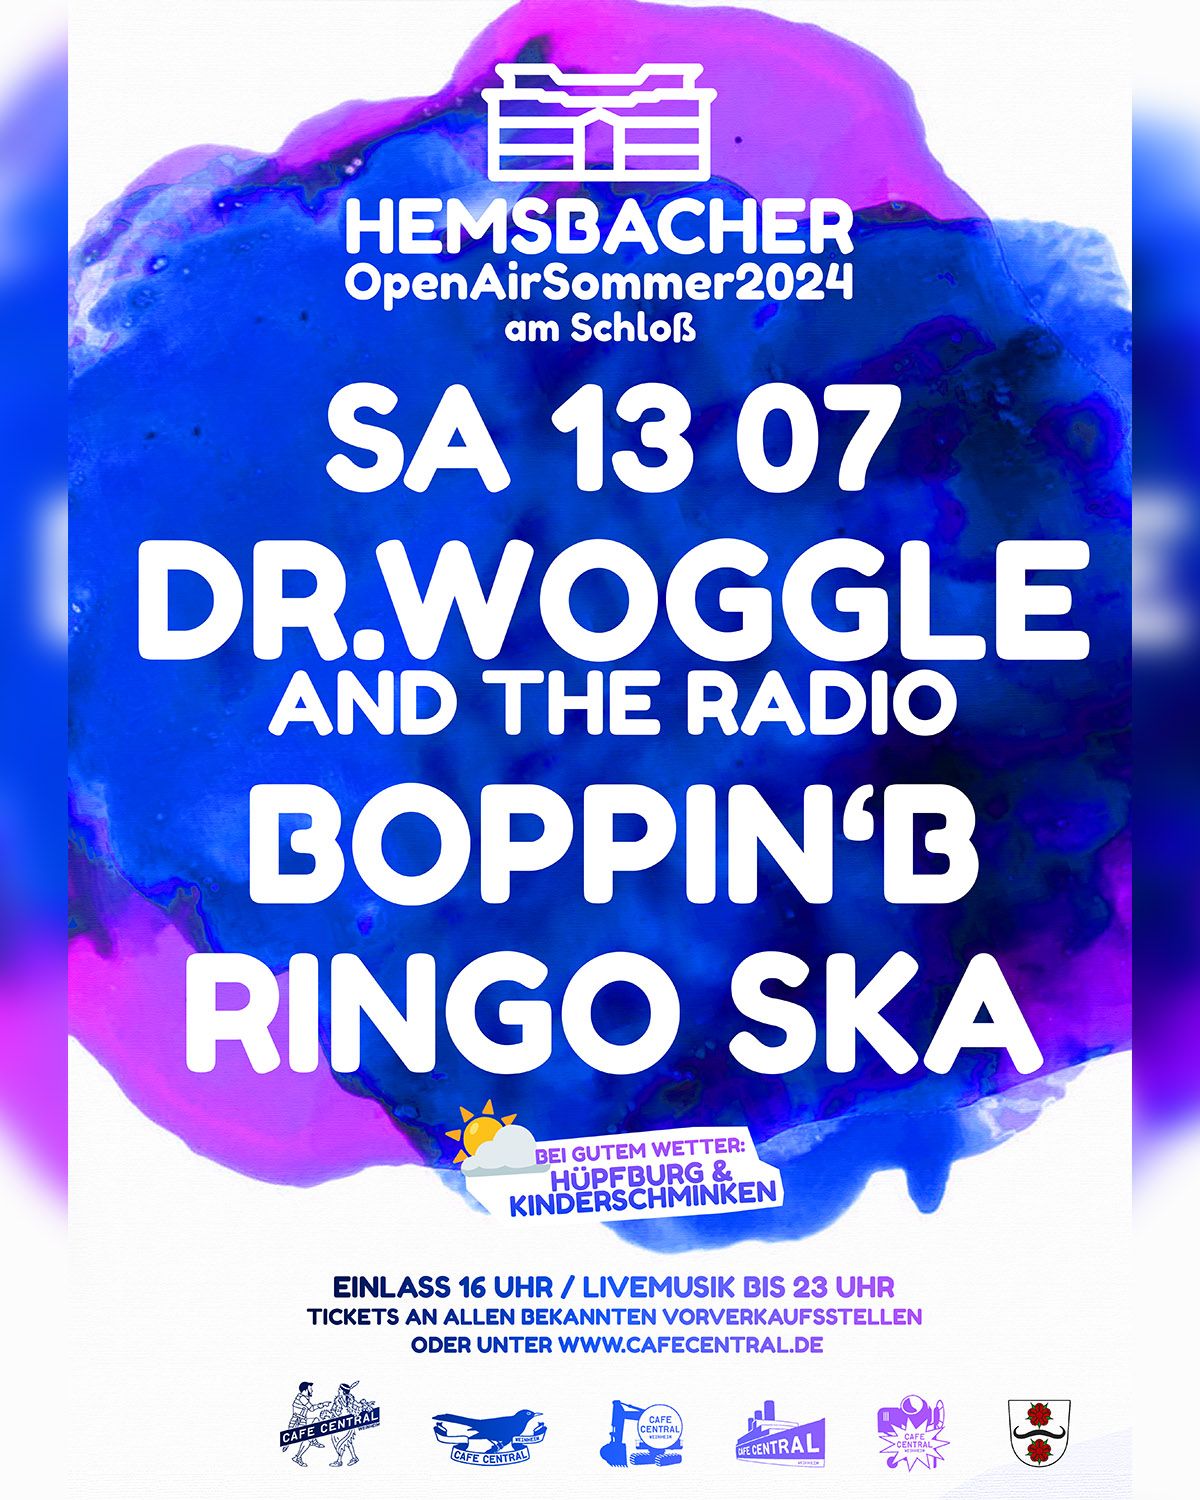 Hemsbach Open Air Sommer am Schloss mit Dr. Woggle & the Radio, Boppin' B und Ringo Ska